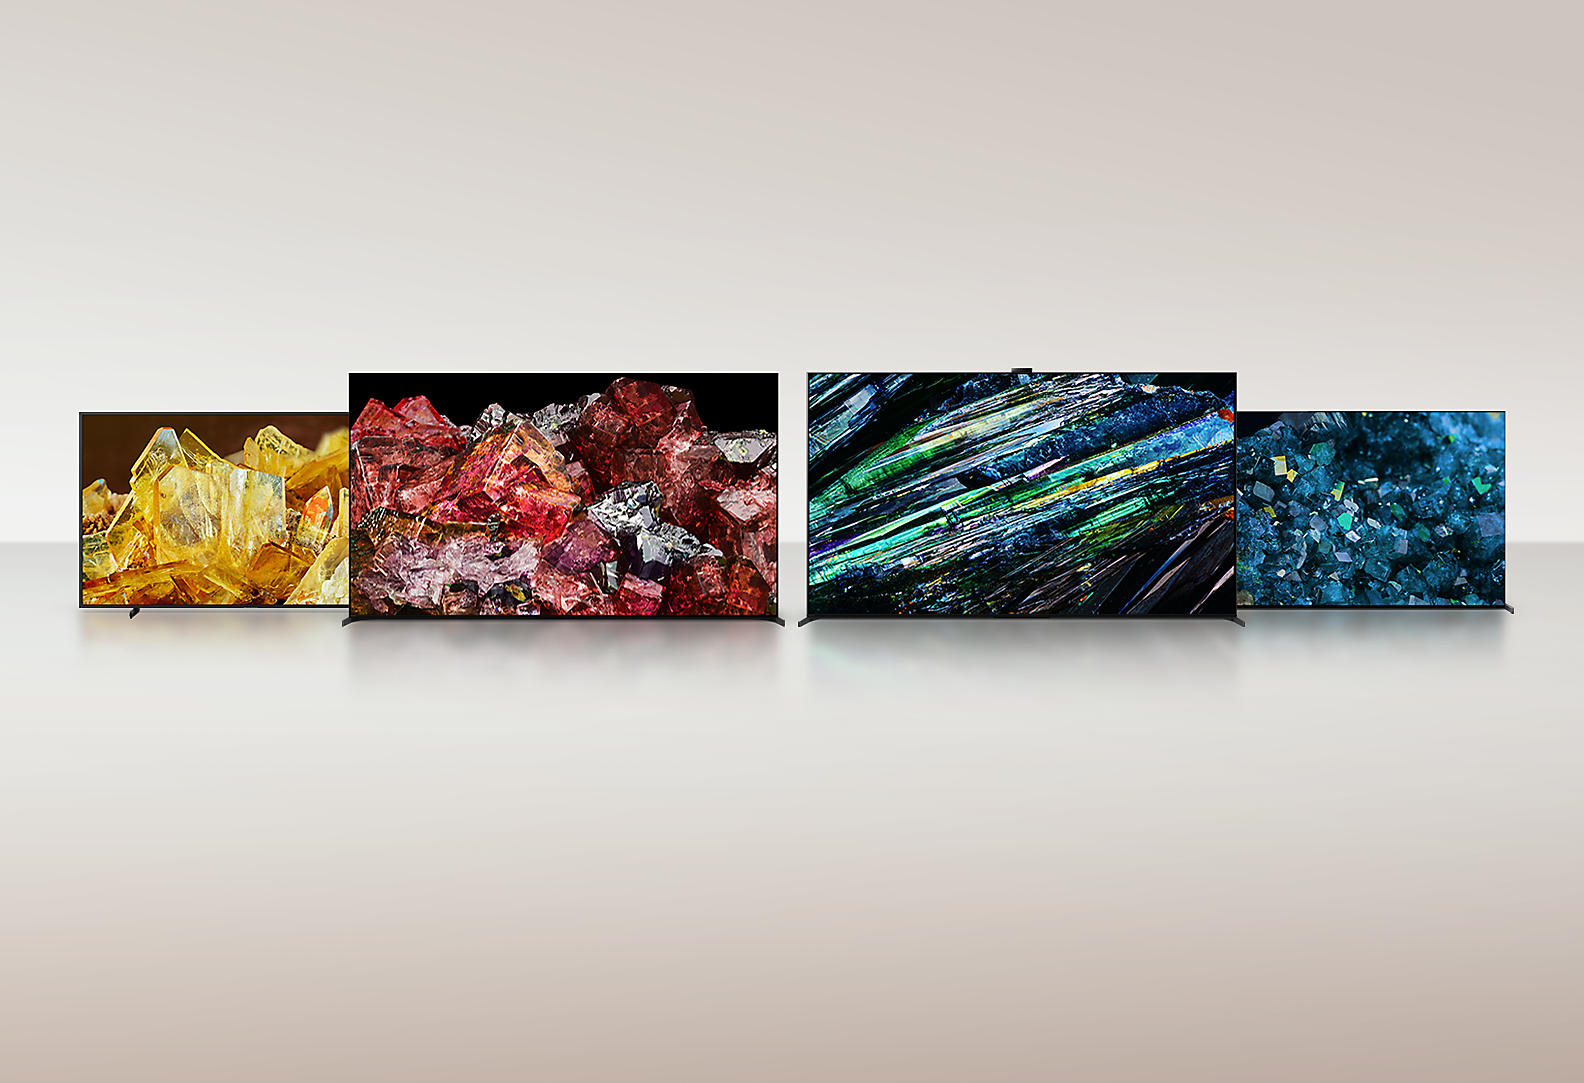 四部 BRAVIA XR 電視，全螢幕畫面上正以驚人細節和色彩顯示不同類型的水晶